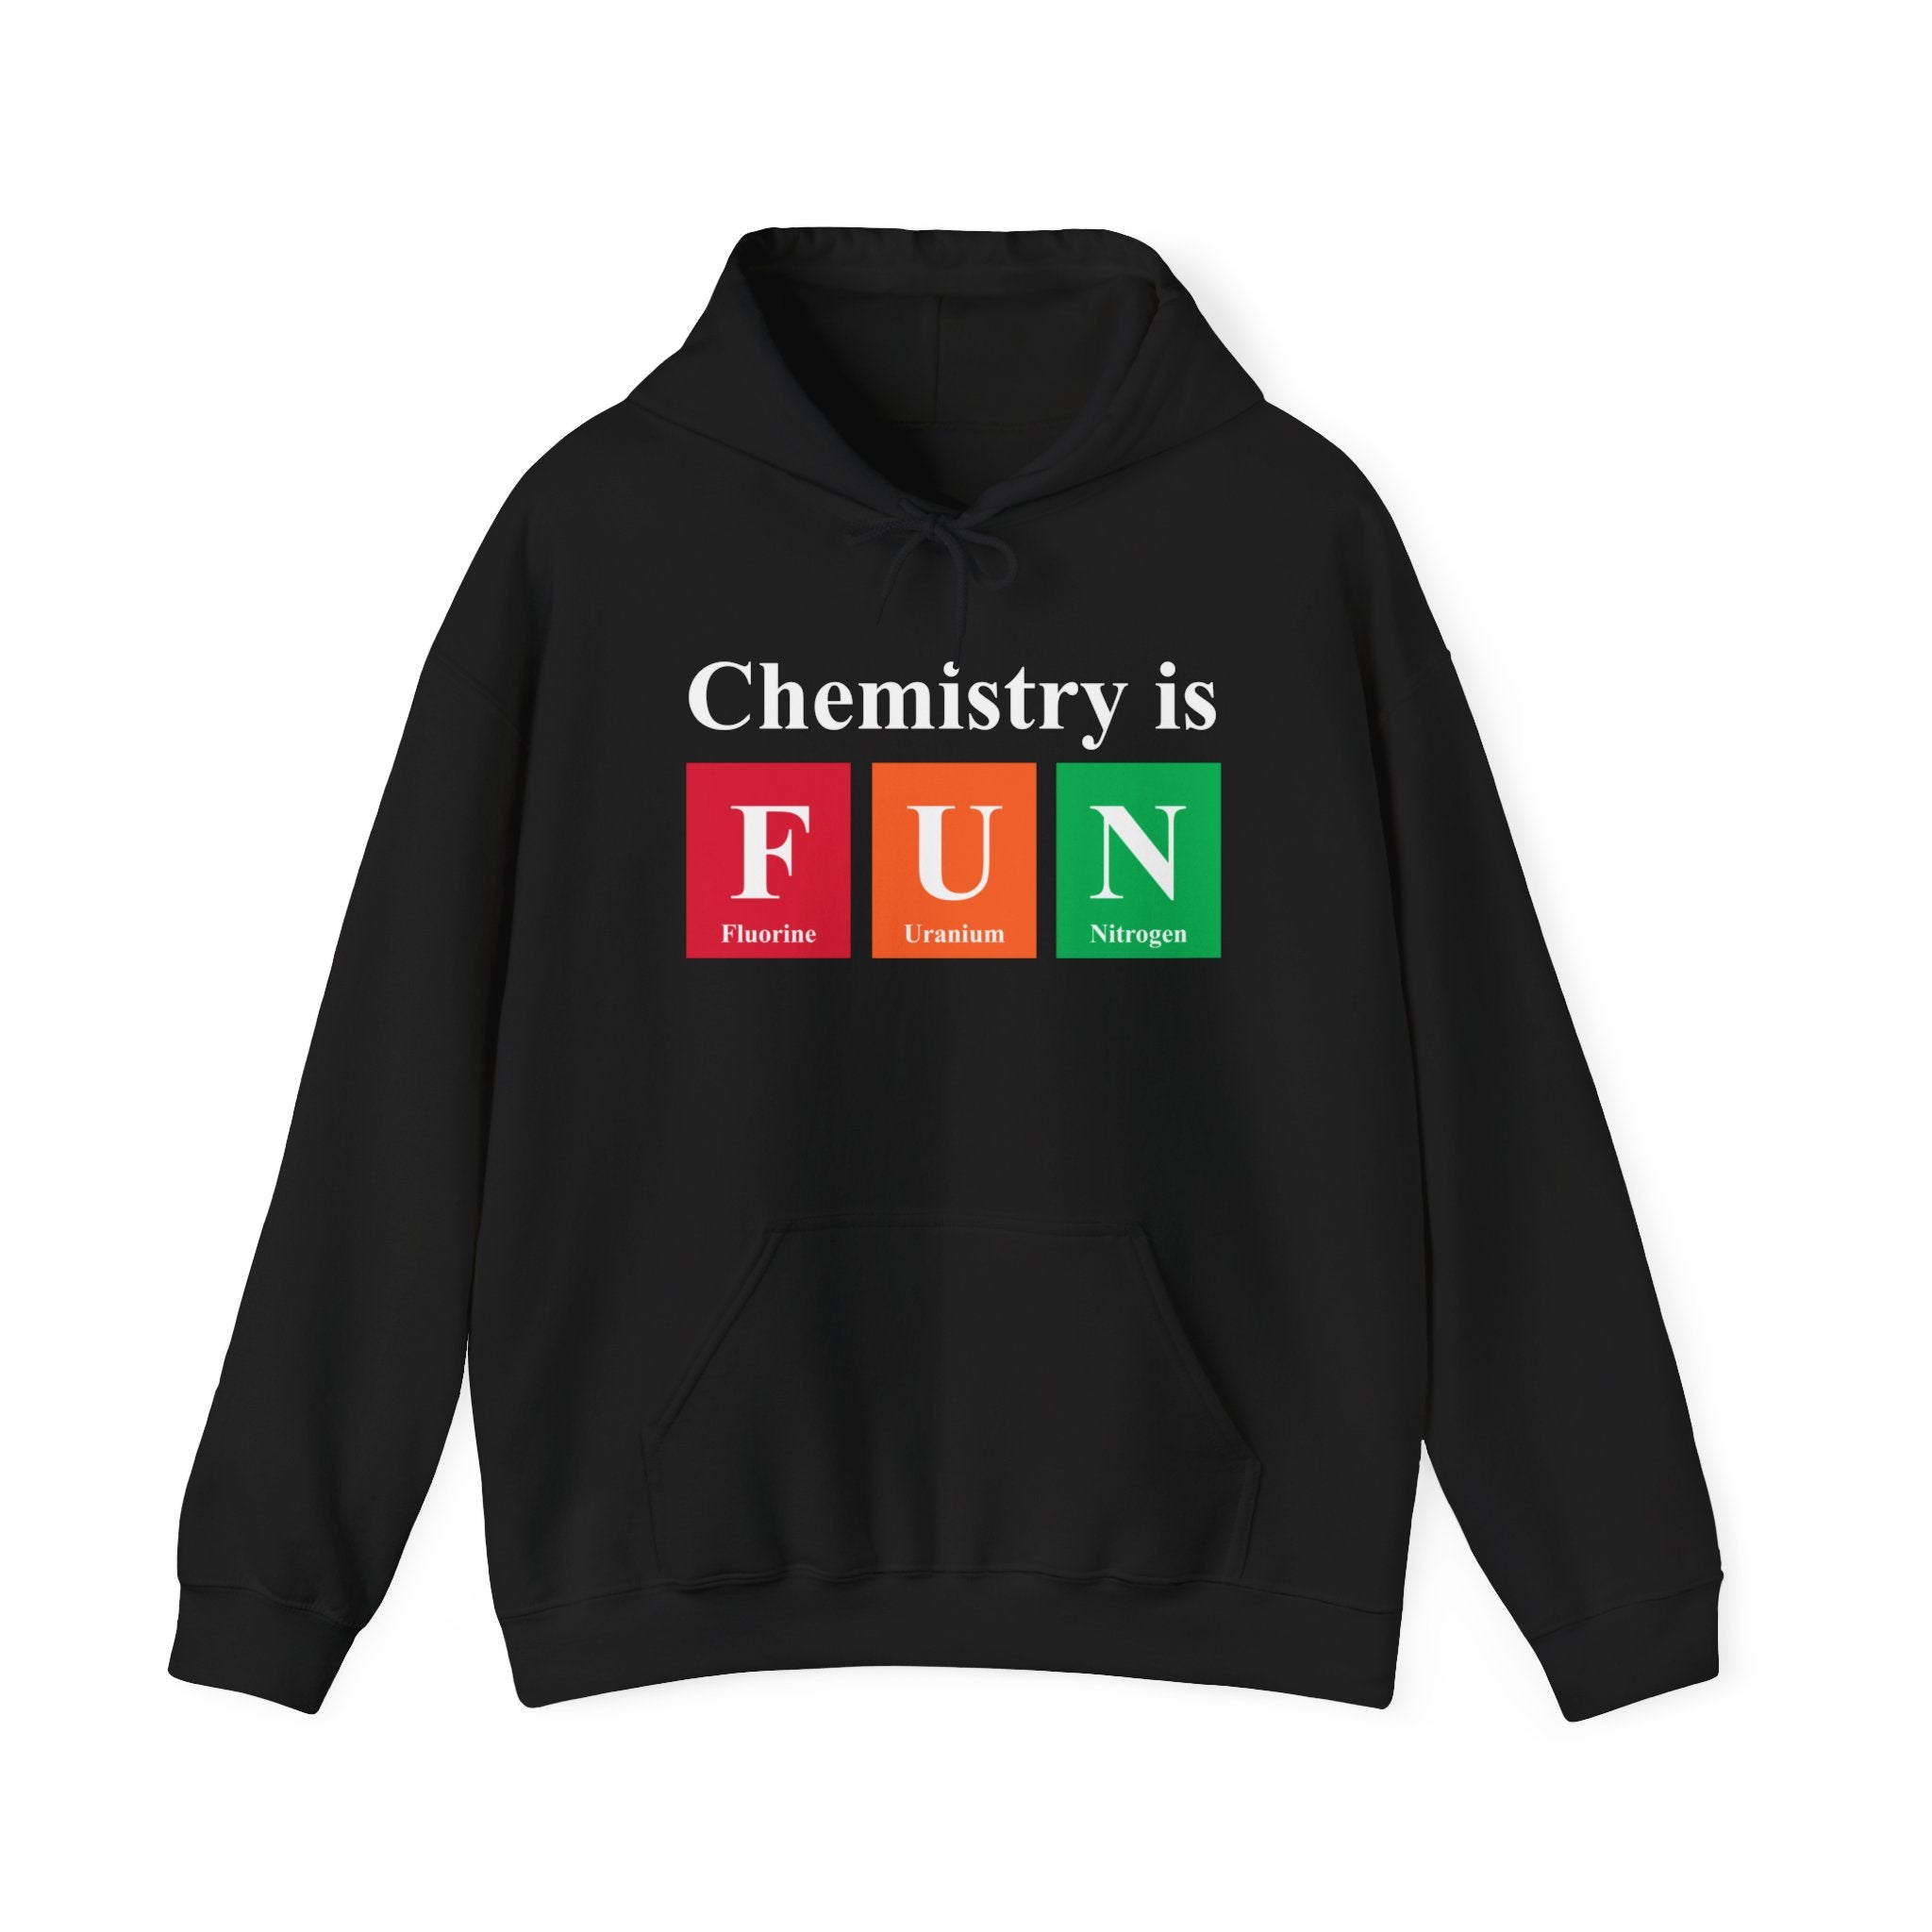 Chemistry is FUN - Hooded Sweatshirt